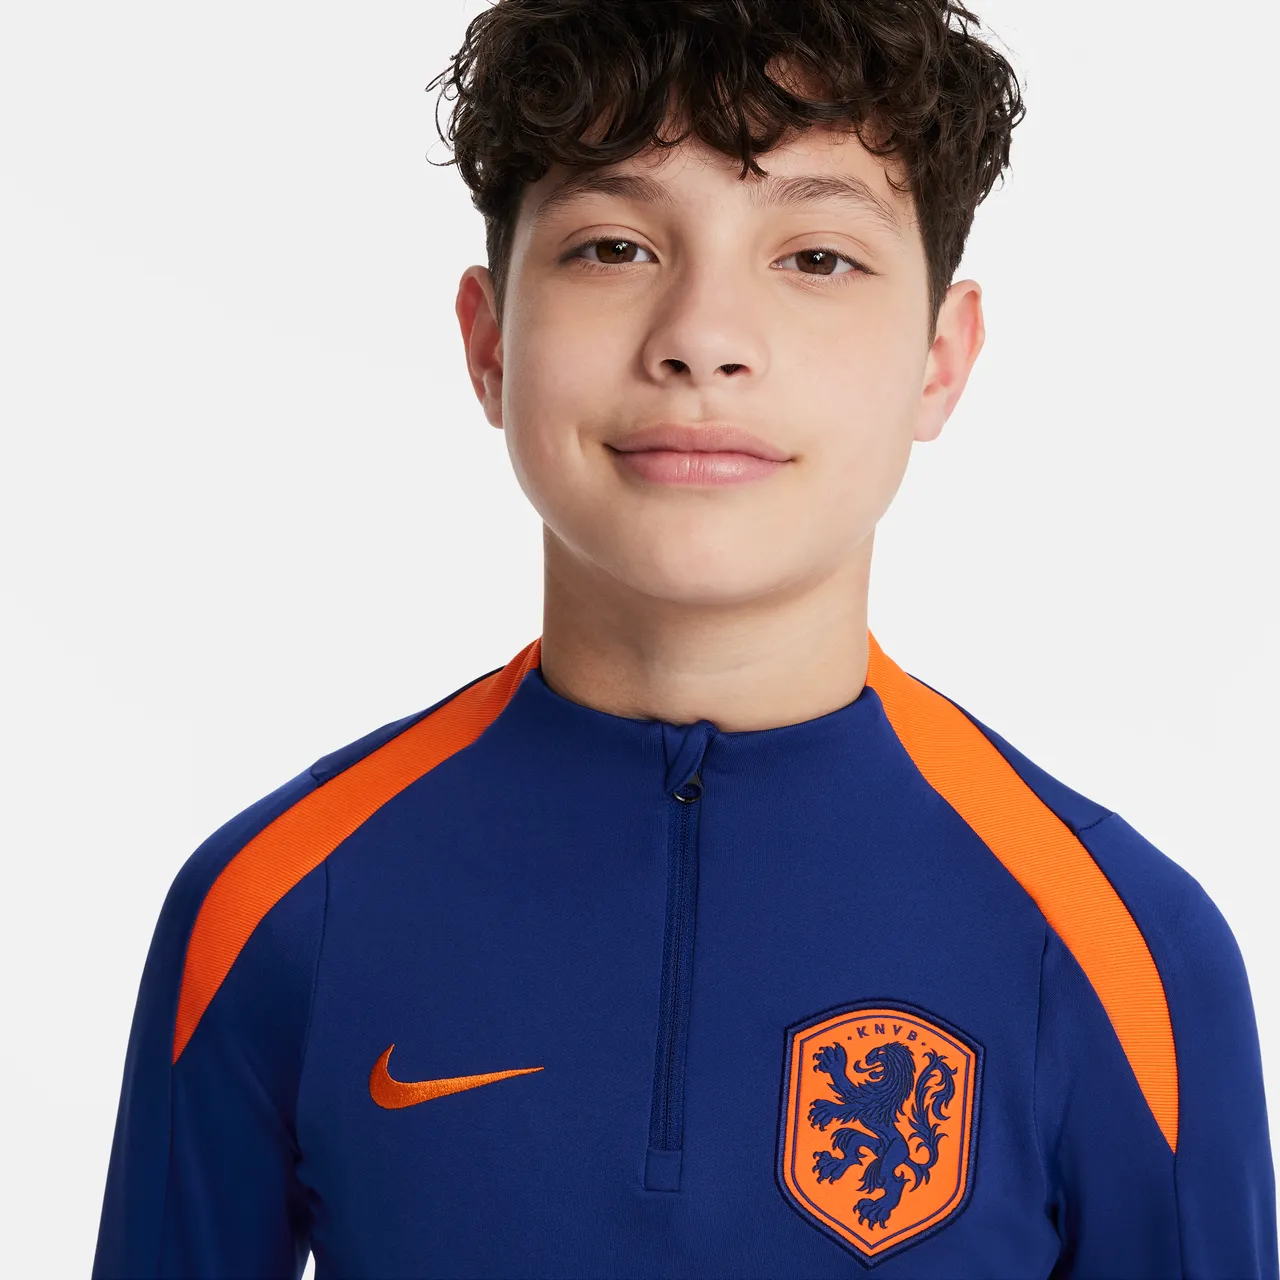 Nederland Strike Nike Dri-FIT voetbaltrainingstop voor kids - Blauw